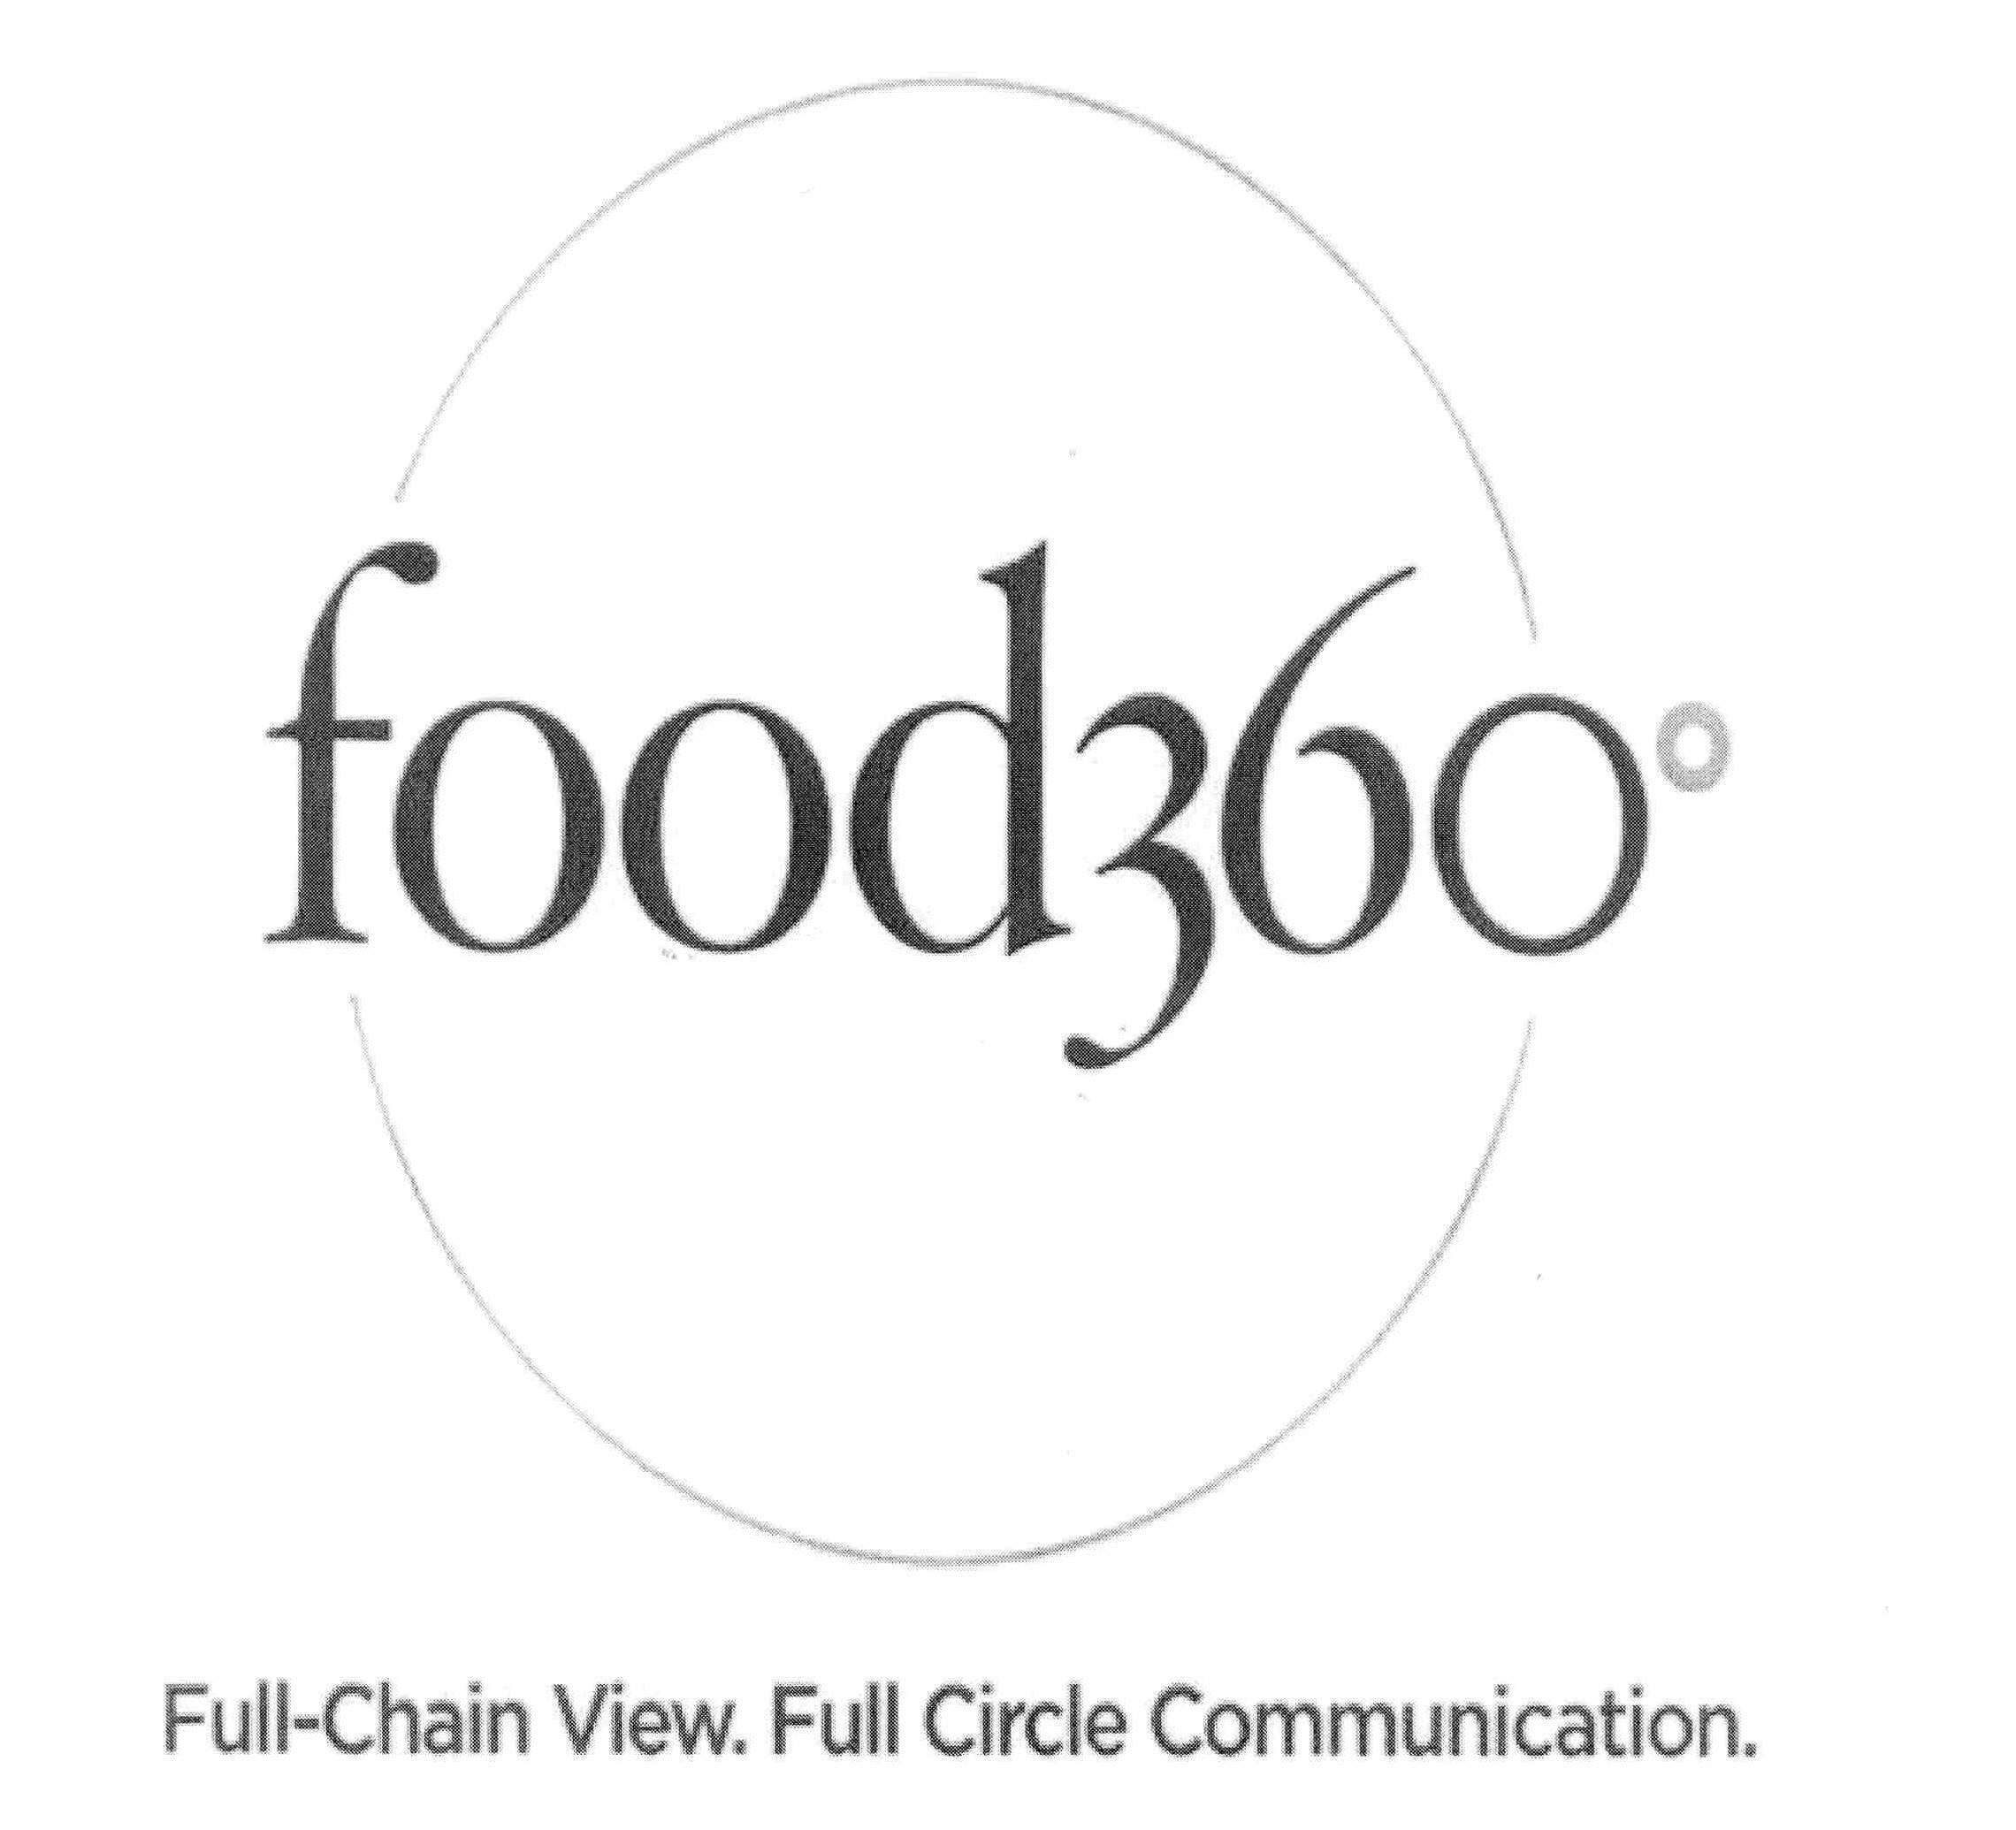  FOOD360Âº FULL-CHAIN VIEW. FULL CIRCLE COMMUNICATION.